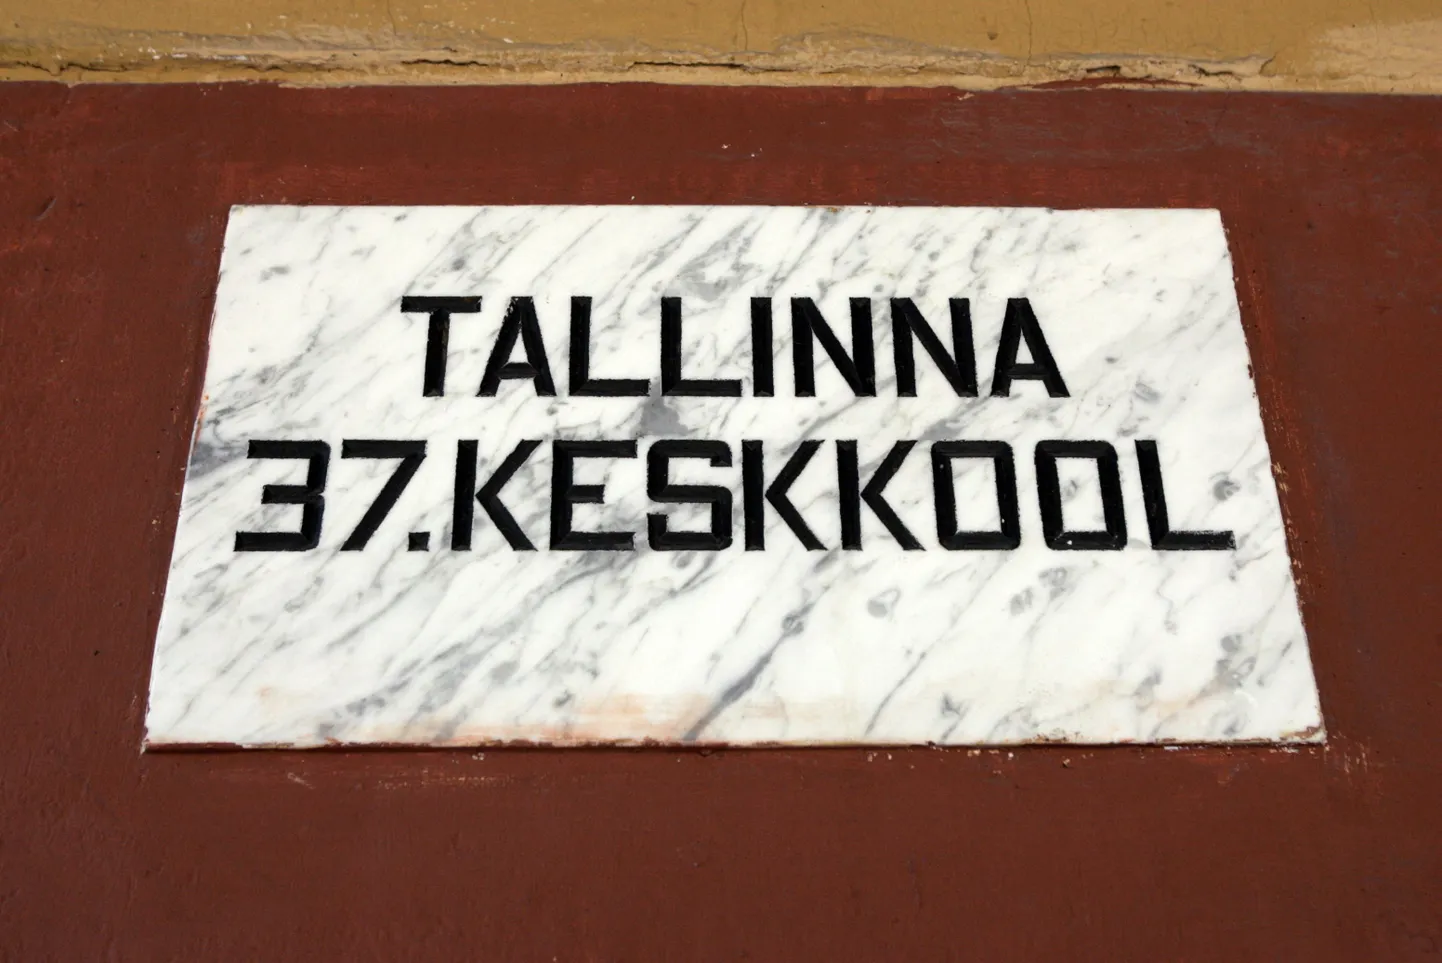 Tallinna 37. keskkool.